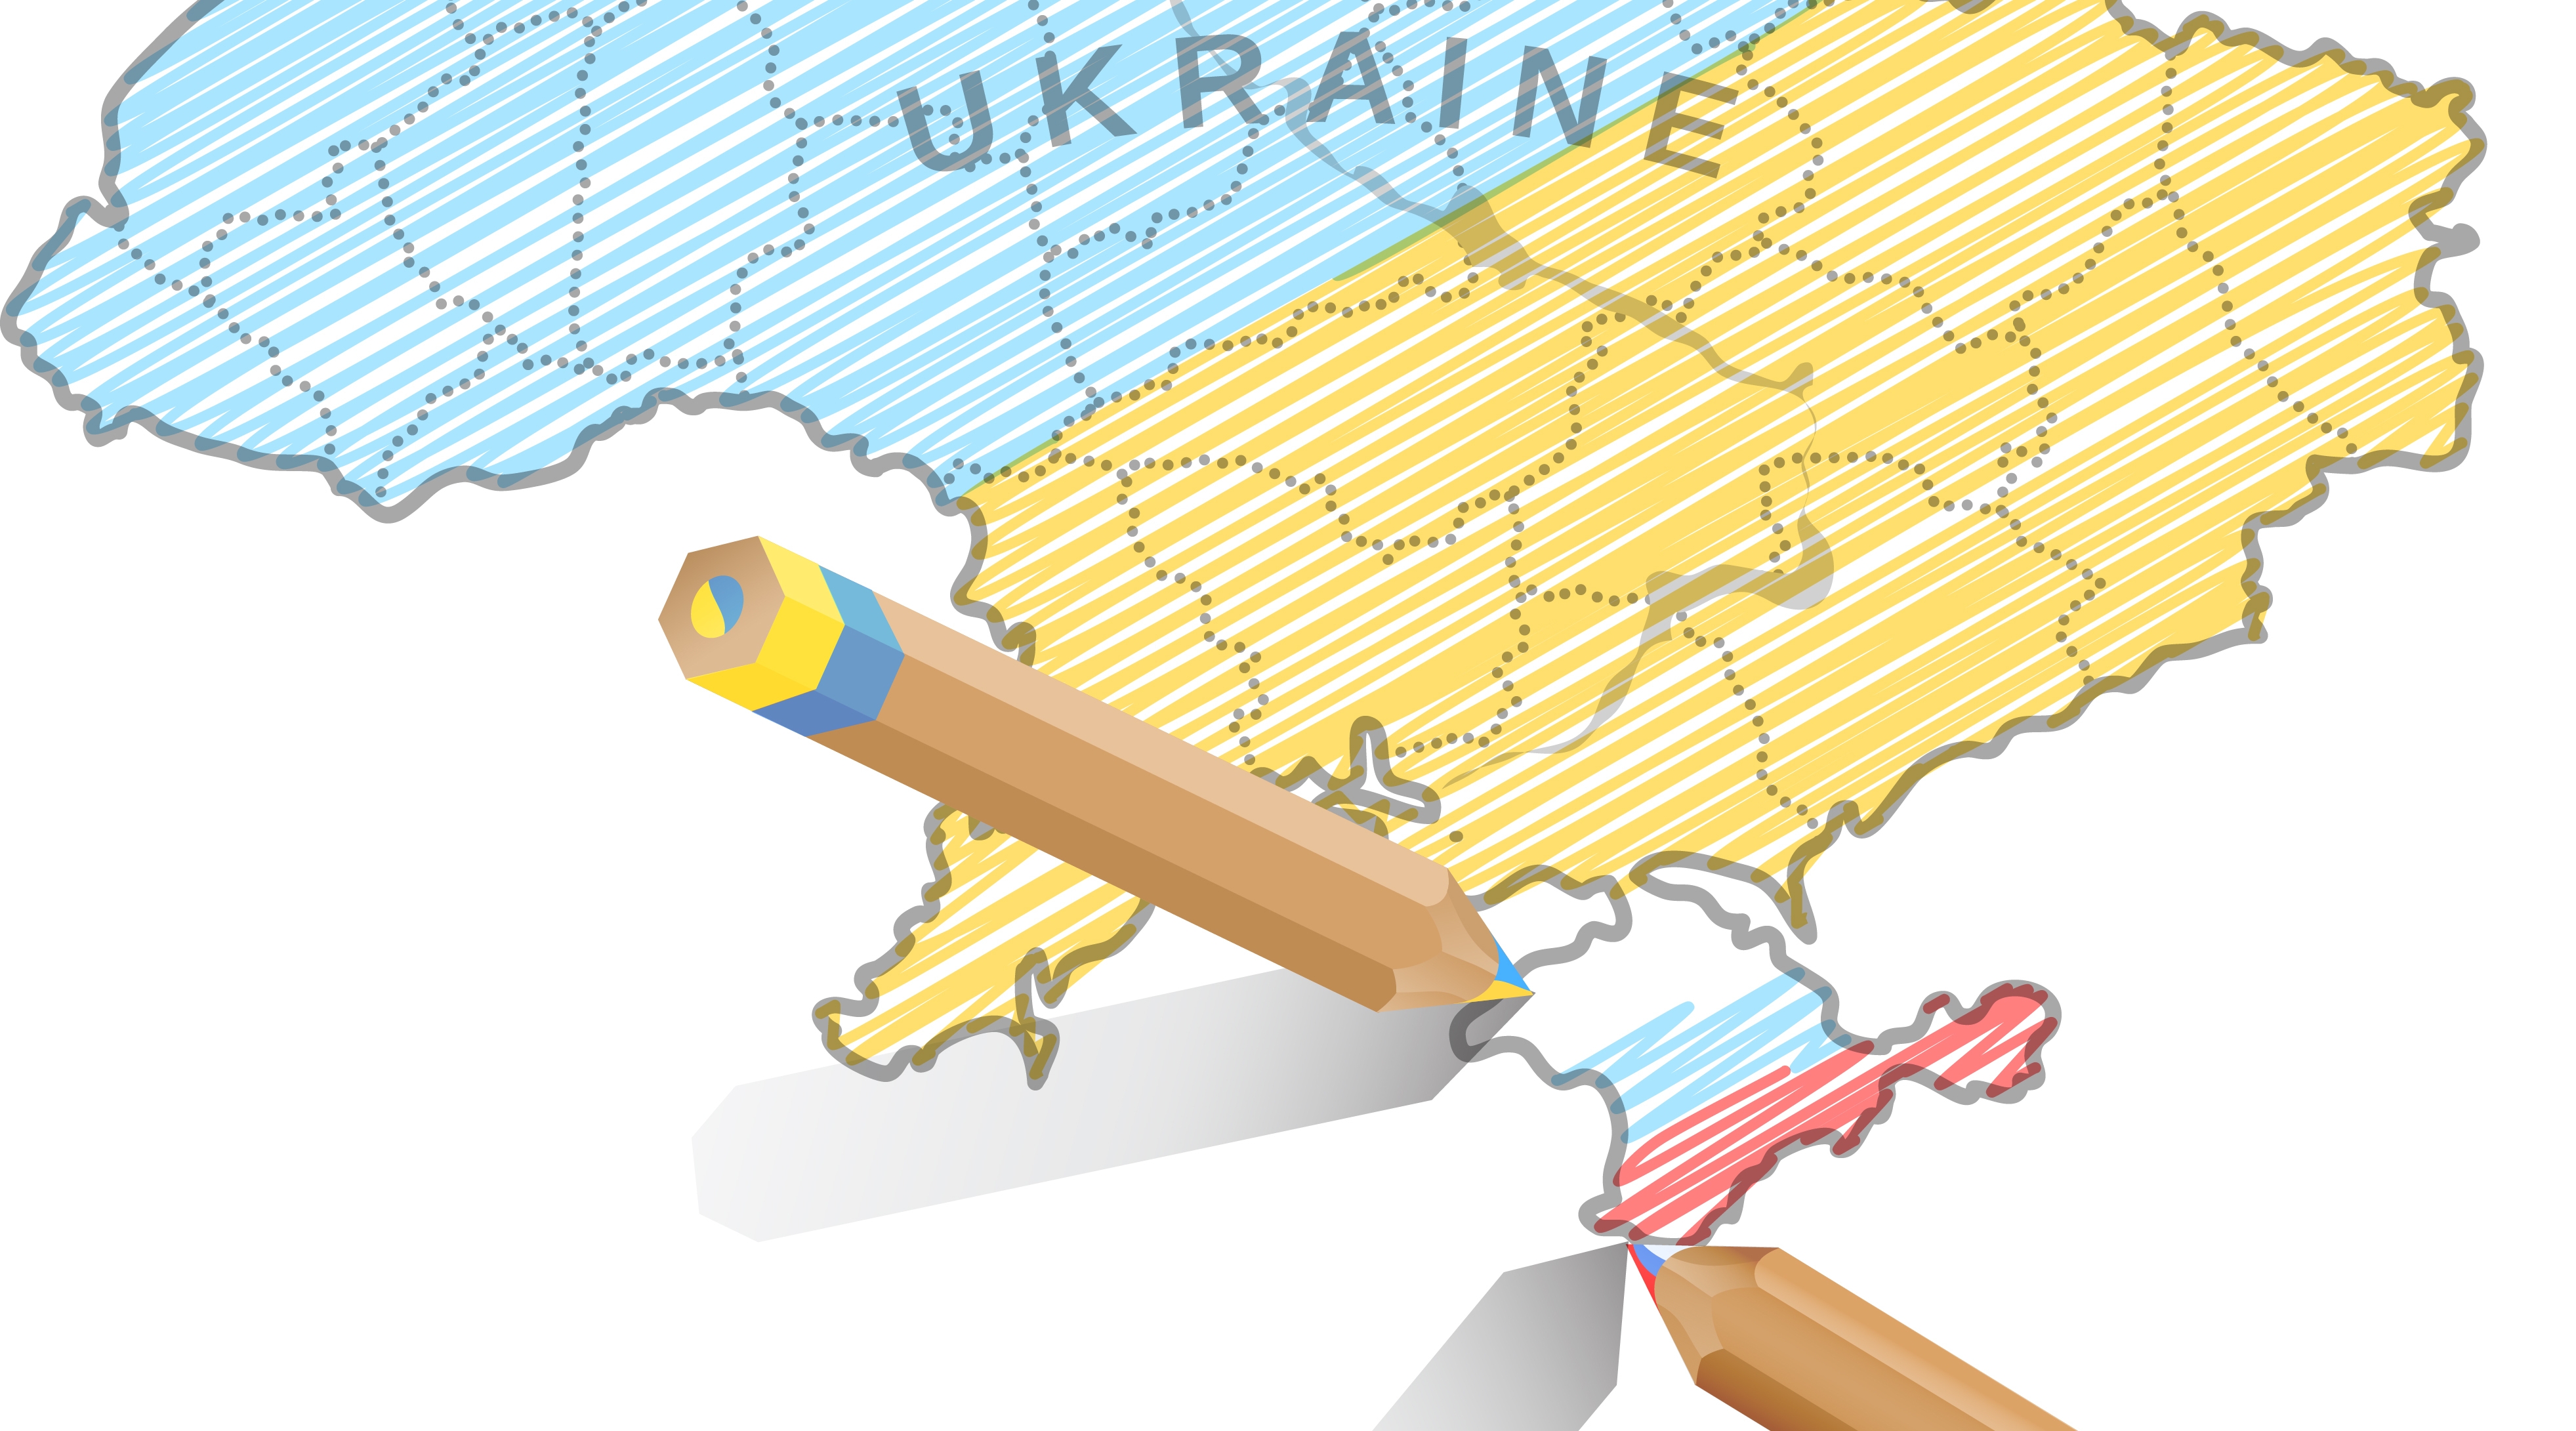 Члены ЦИК РФ пожаловались на свою карту с нарисованным от руки Крымом